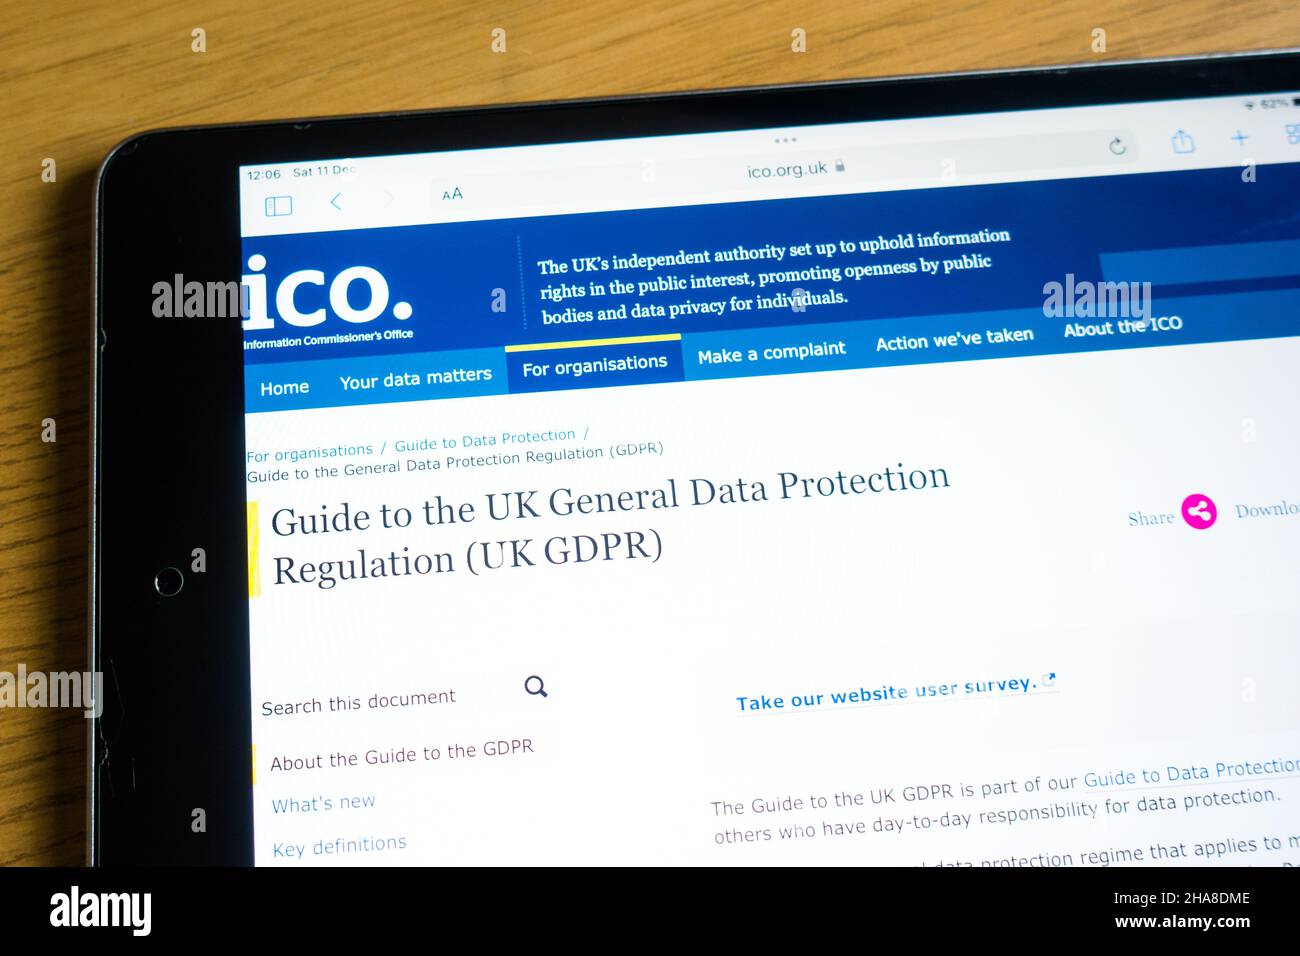 Oficina del Comisionado de Información de la OIC El organismo público no departamental responsable de la protección y regulación de datos en el Reino Unido Foto de stock